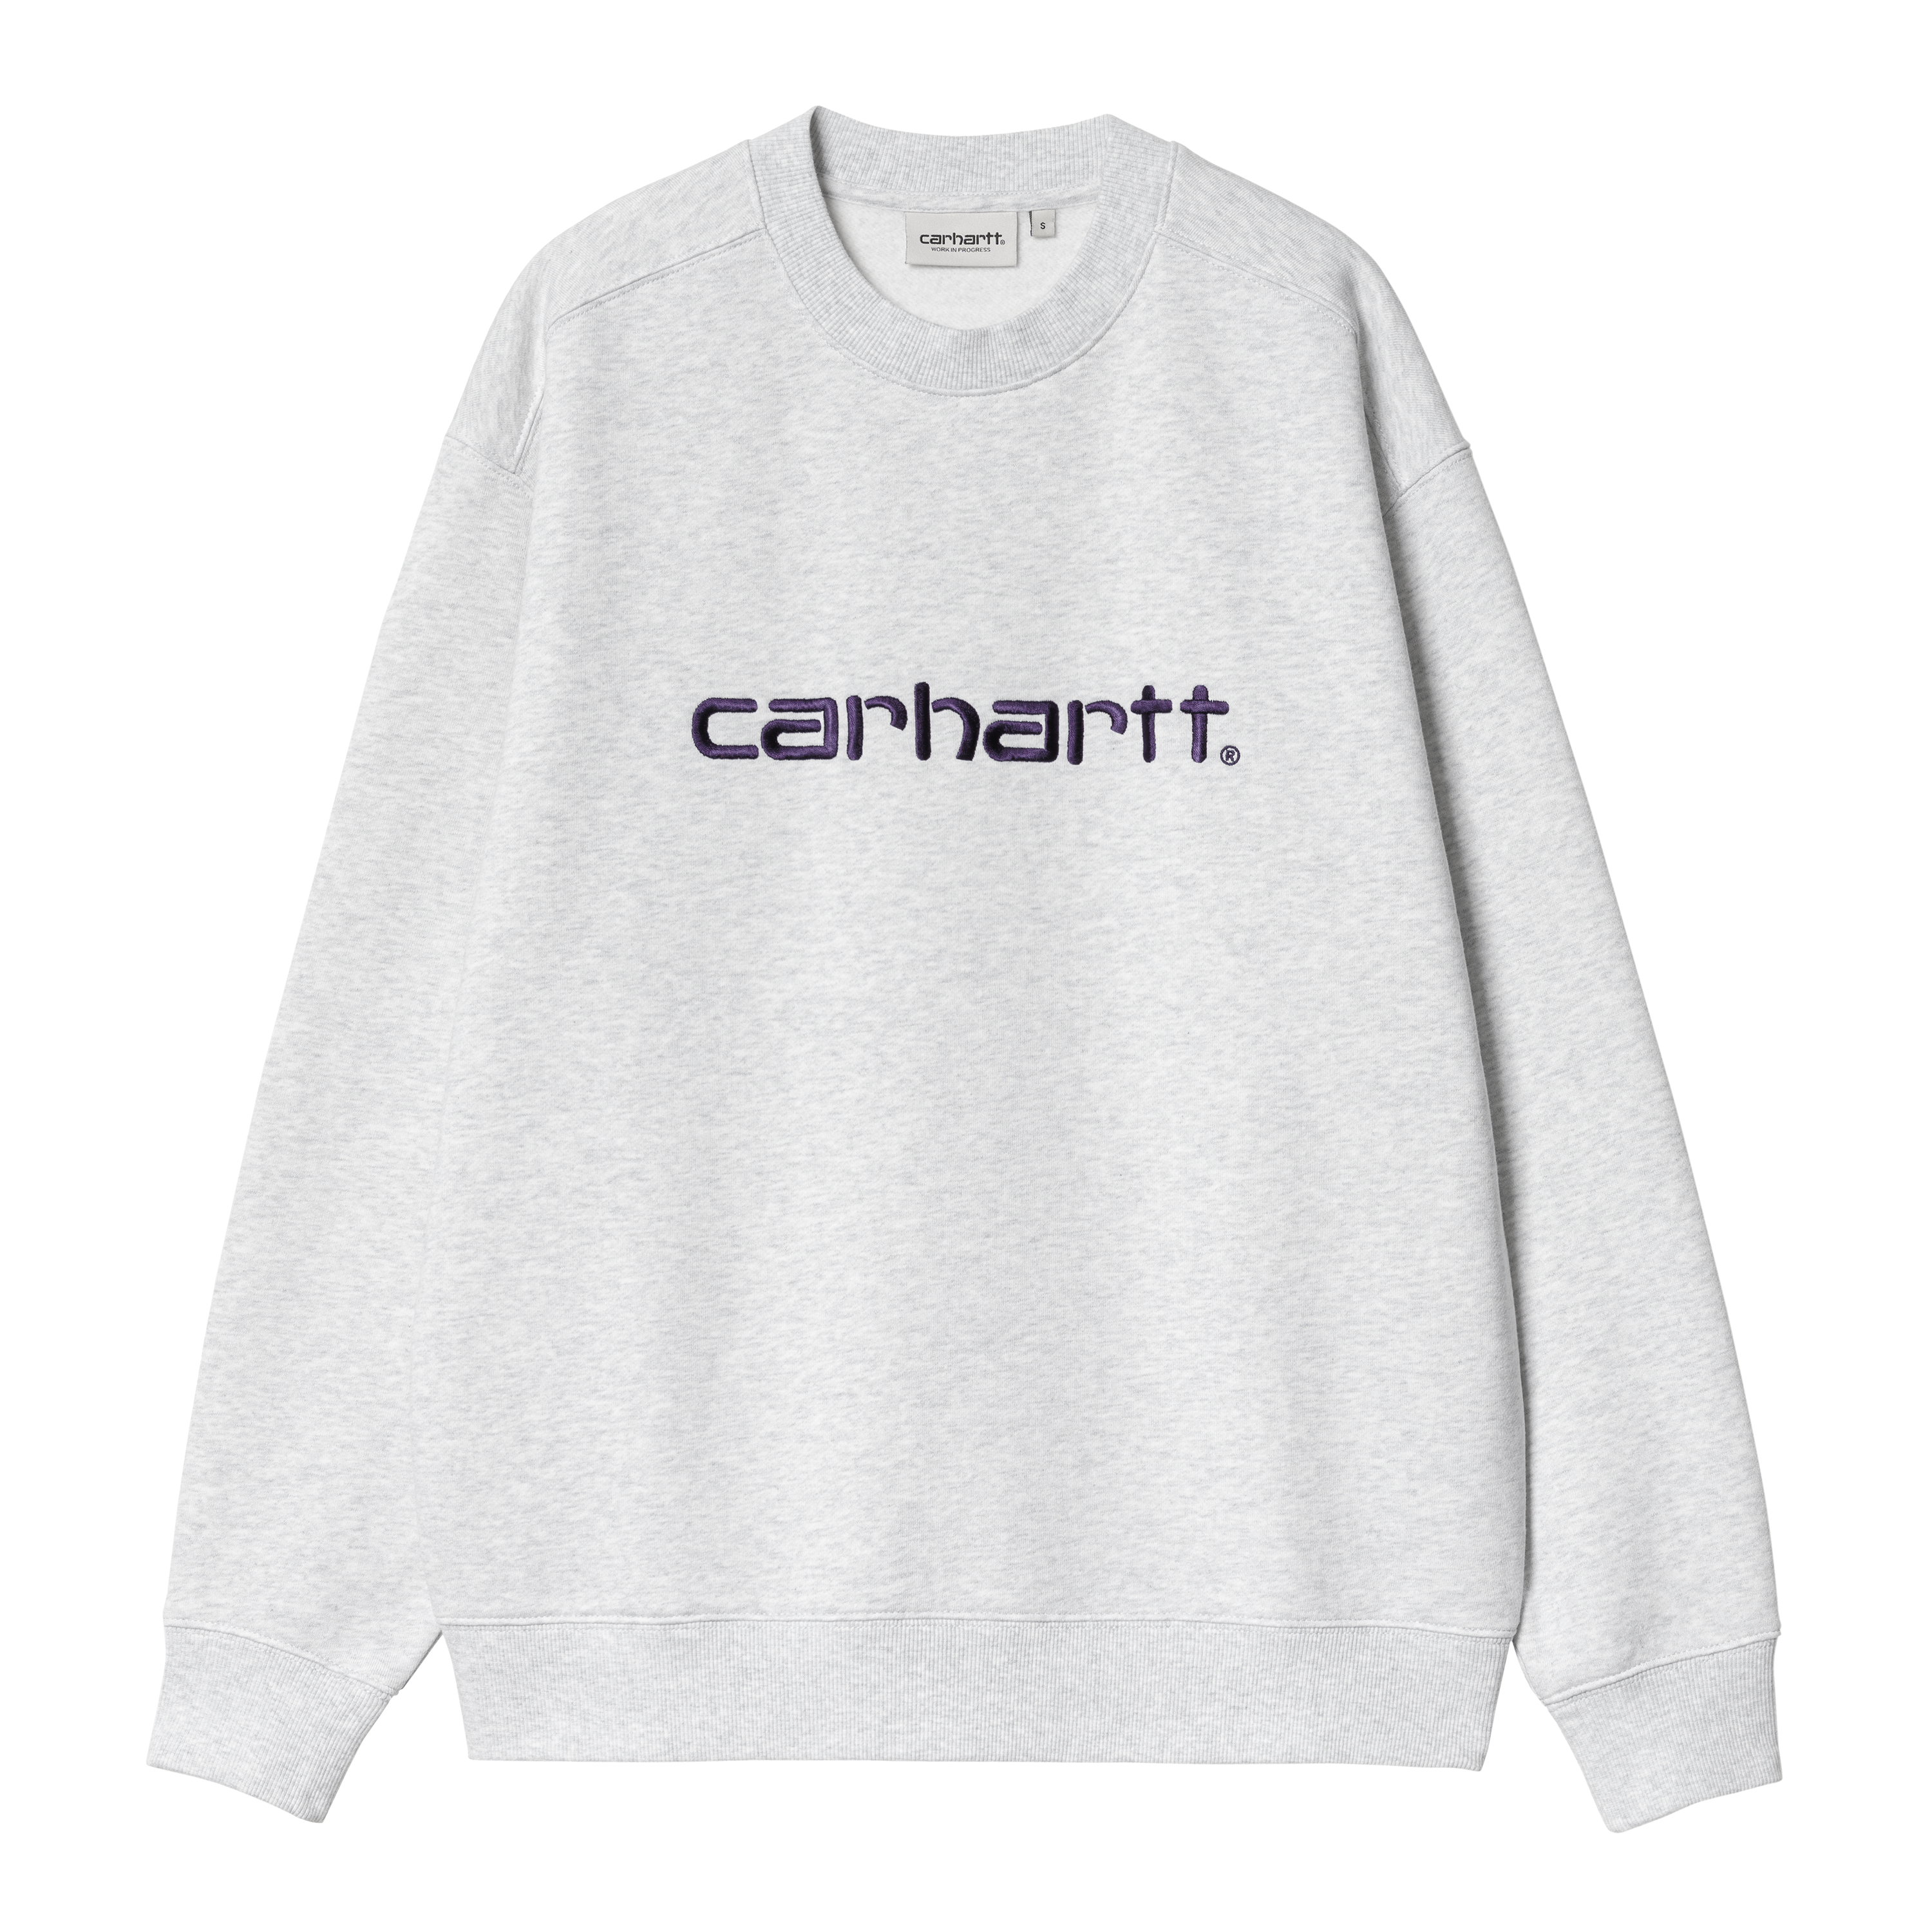 Carhartt WIP Women’s Carhartt Sweatshirt in Grigio